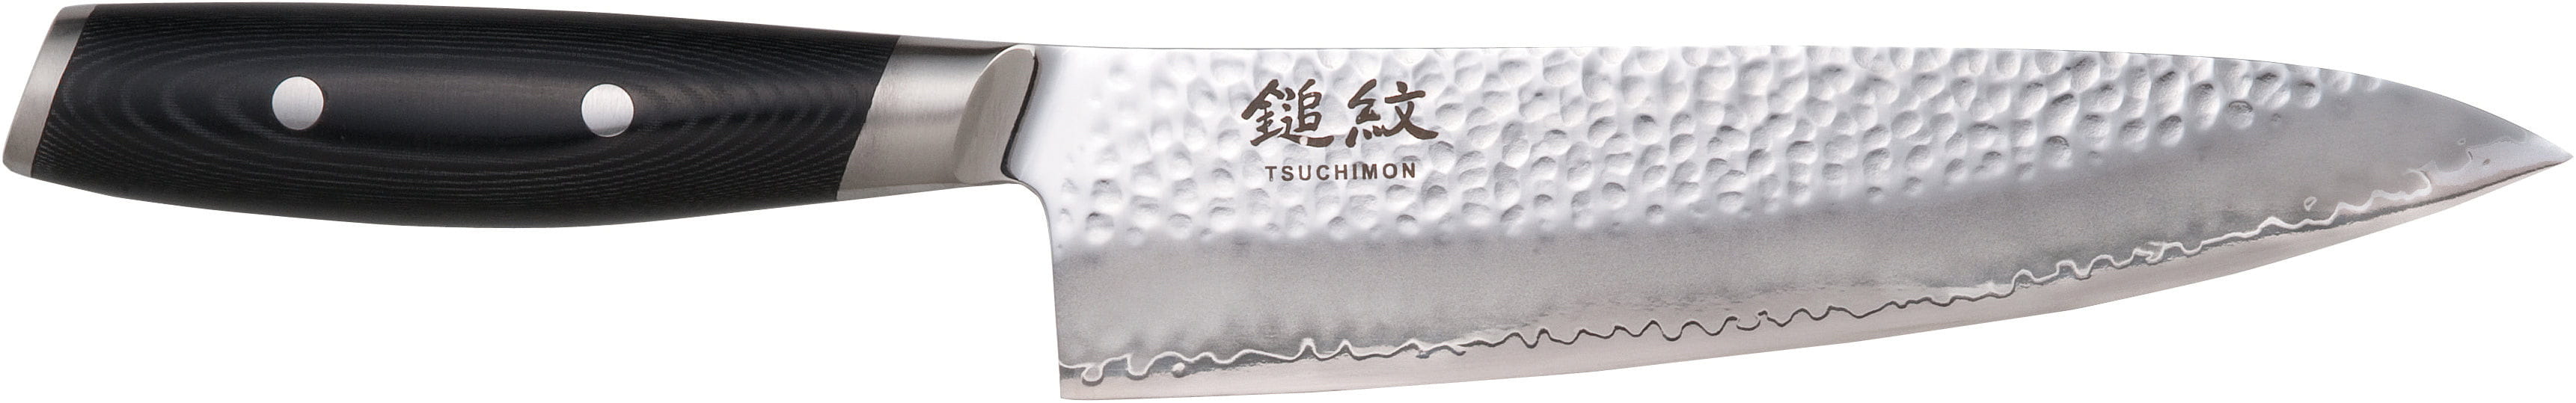 Yaxell Tsuchimon Chefův nůž, 20 cm